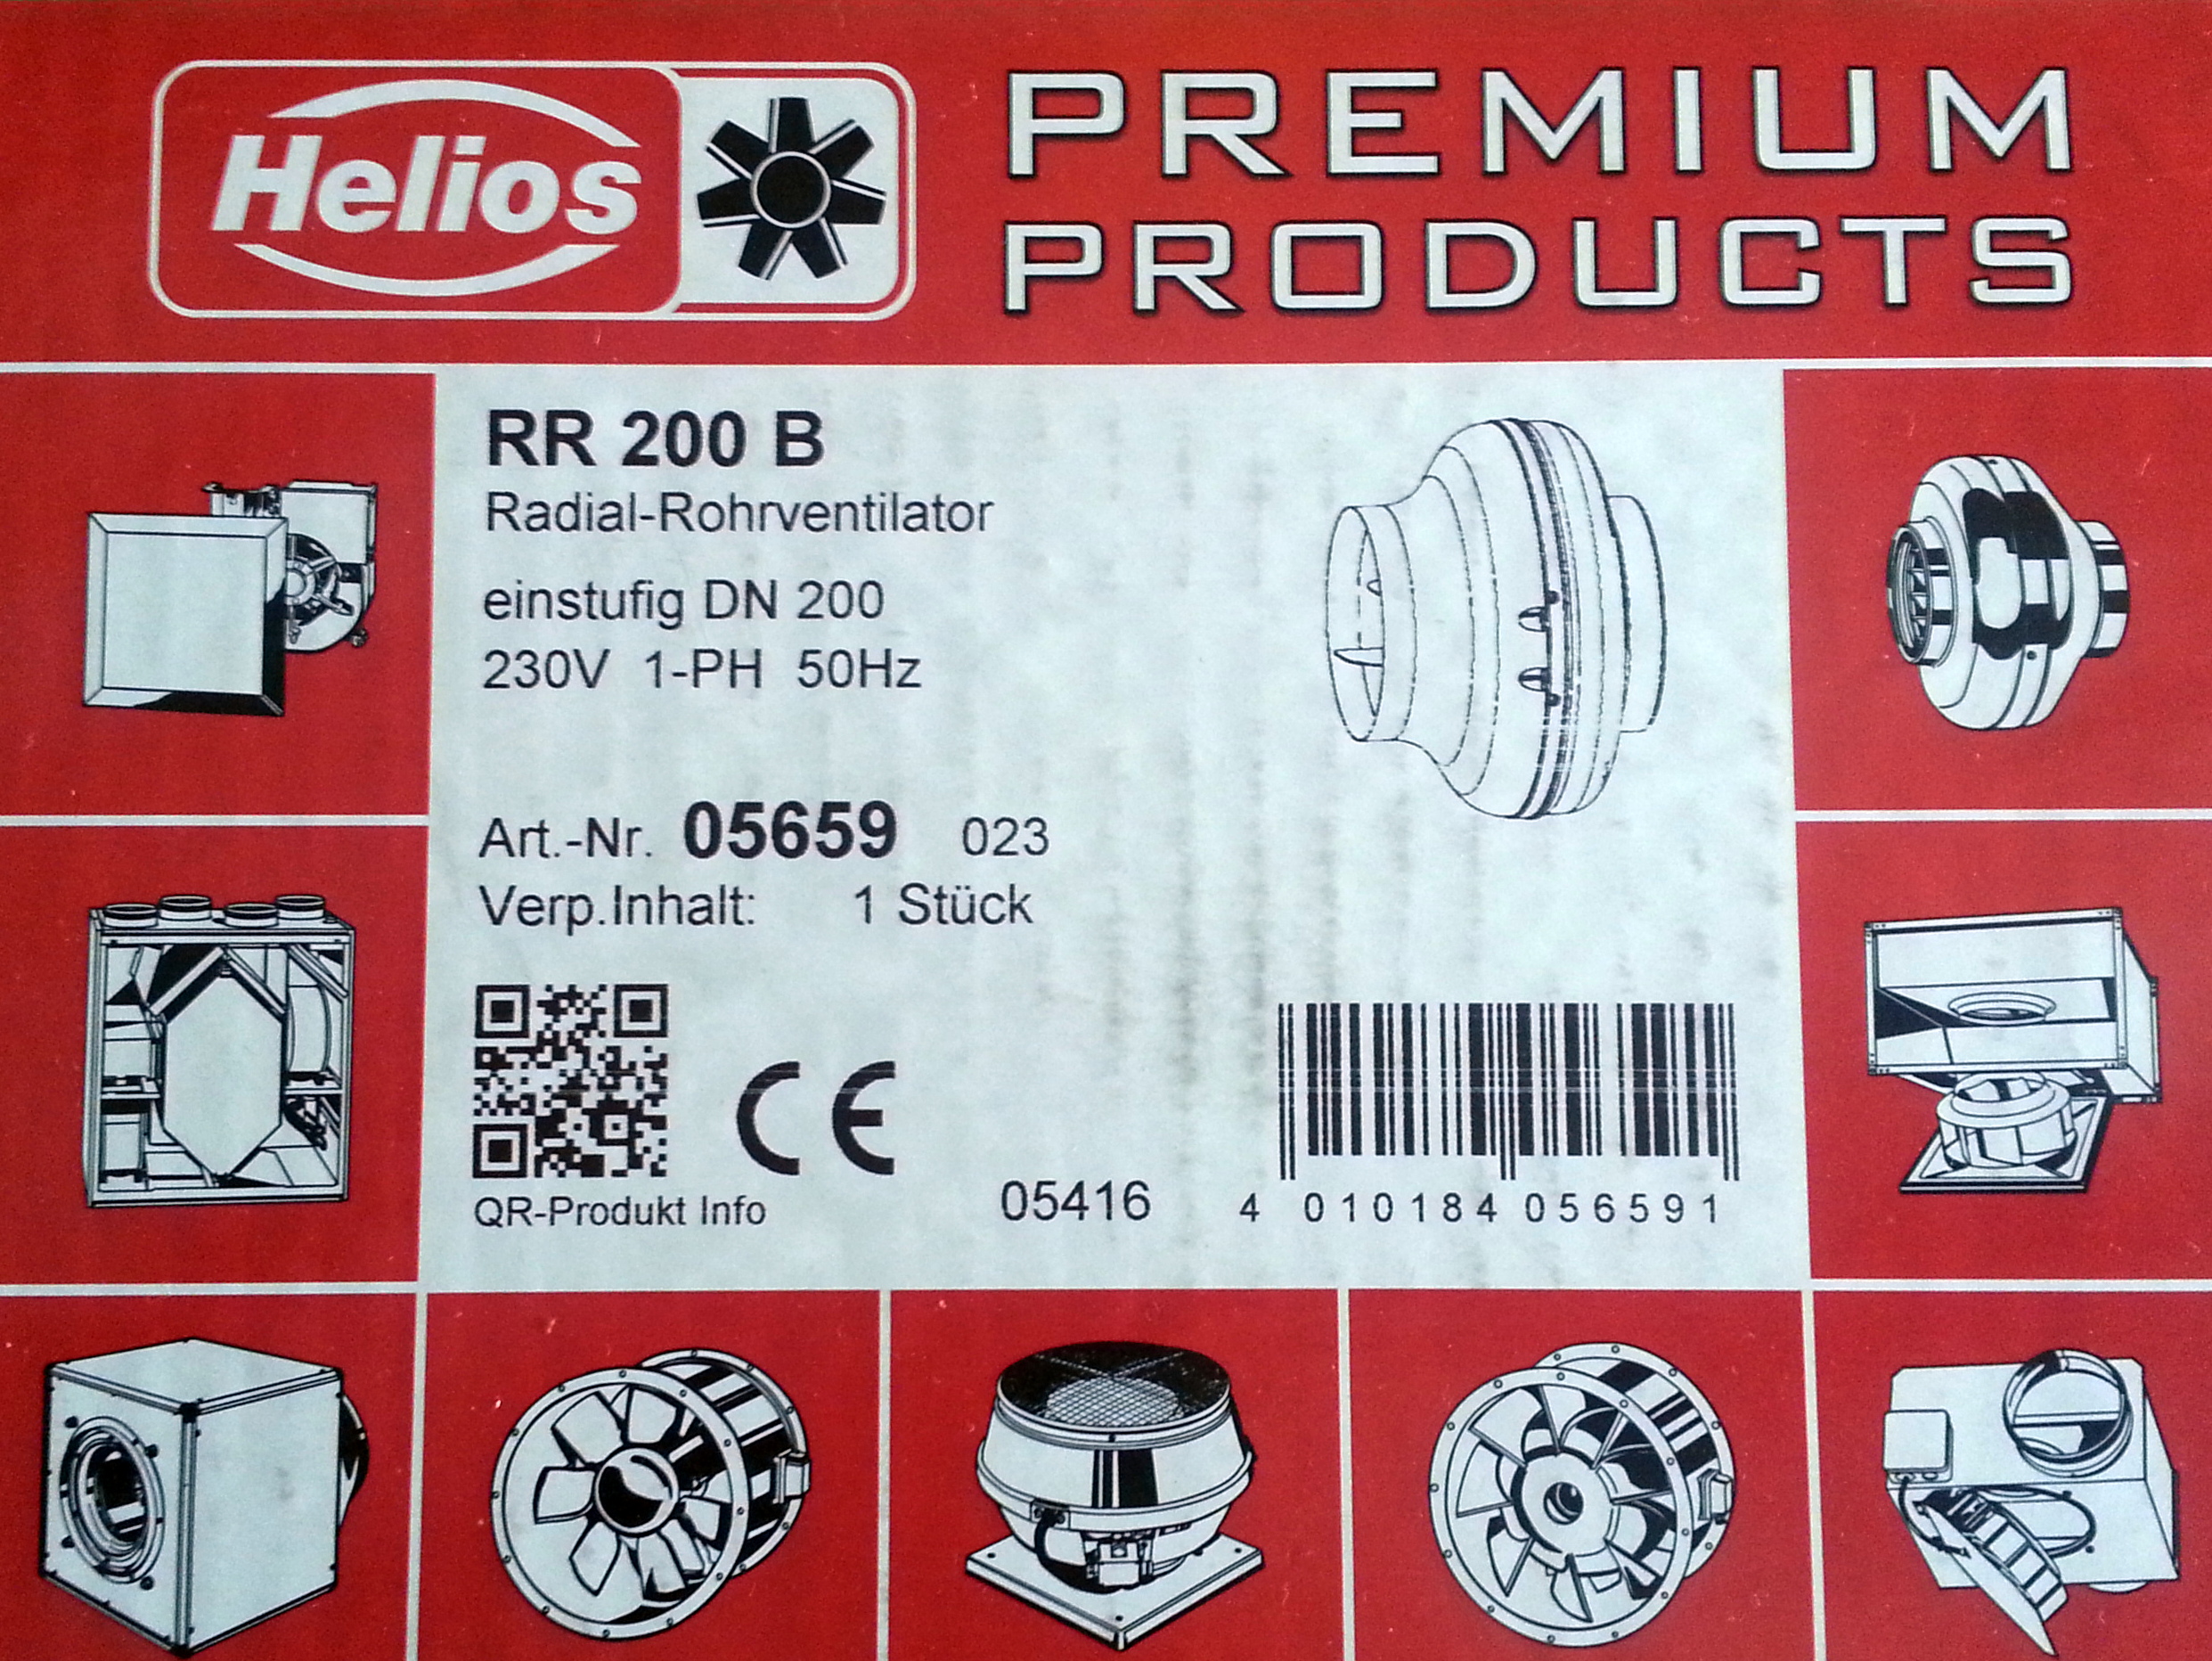 Helios RR 200 B Centrifugal in-line fan ventilator, 1-PH 5659 05659